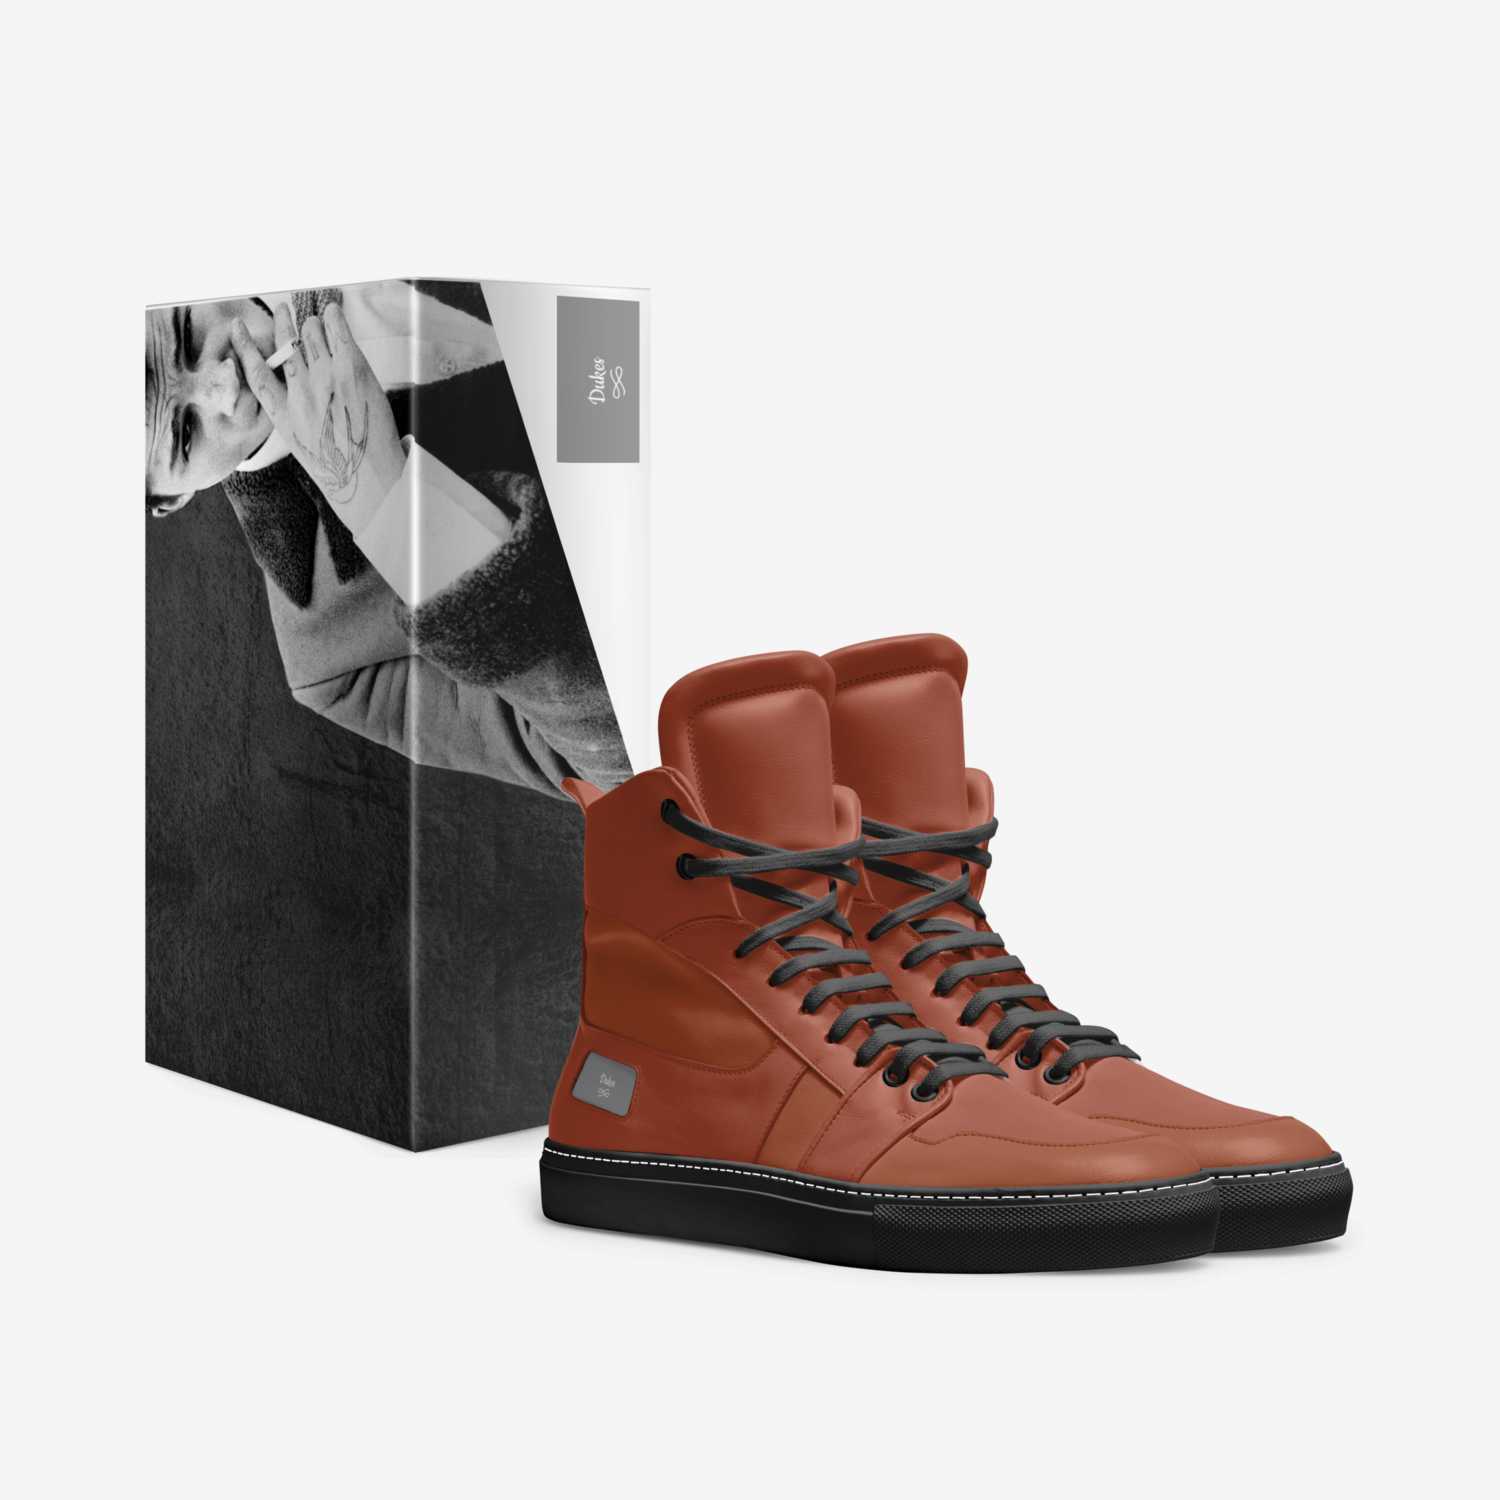 Arnett 2 custom made in Italy shoes by Arnett Hankerson | Box view